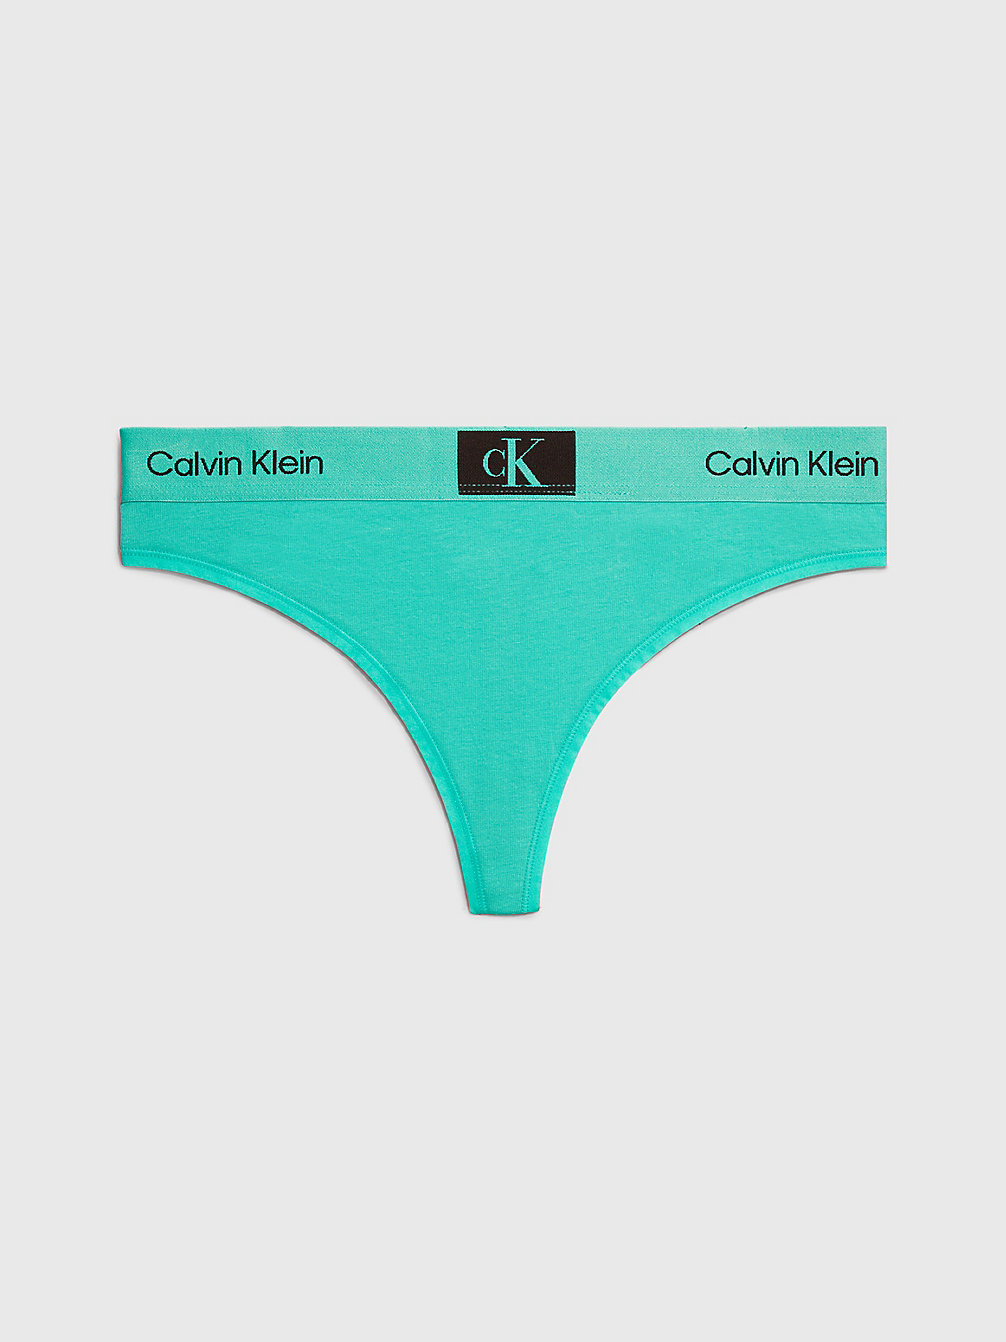 FRESH PEPPERMINT String - Ck96 undefined Damen Calvin Klein